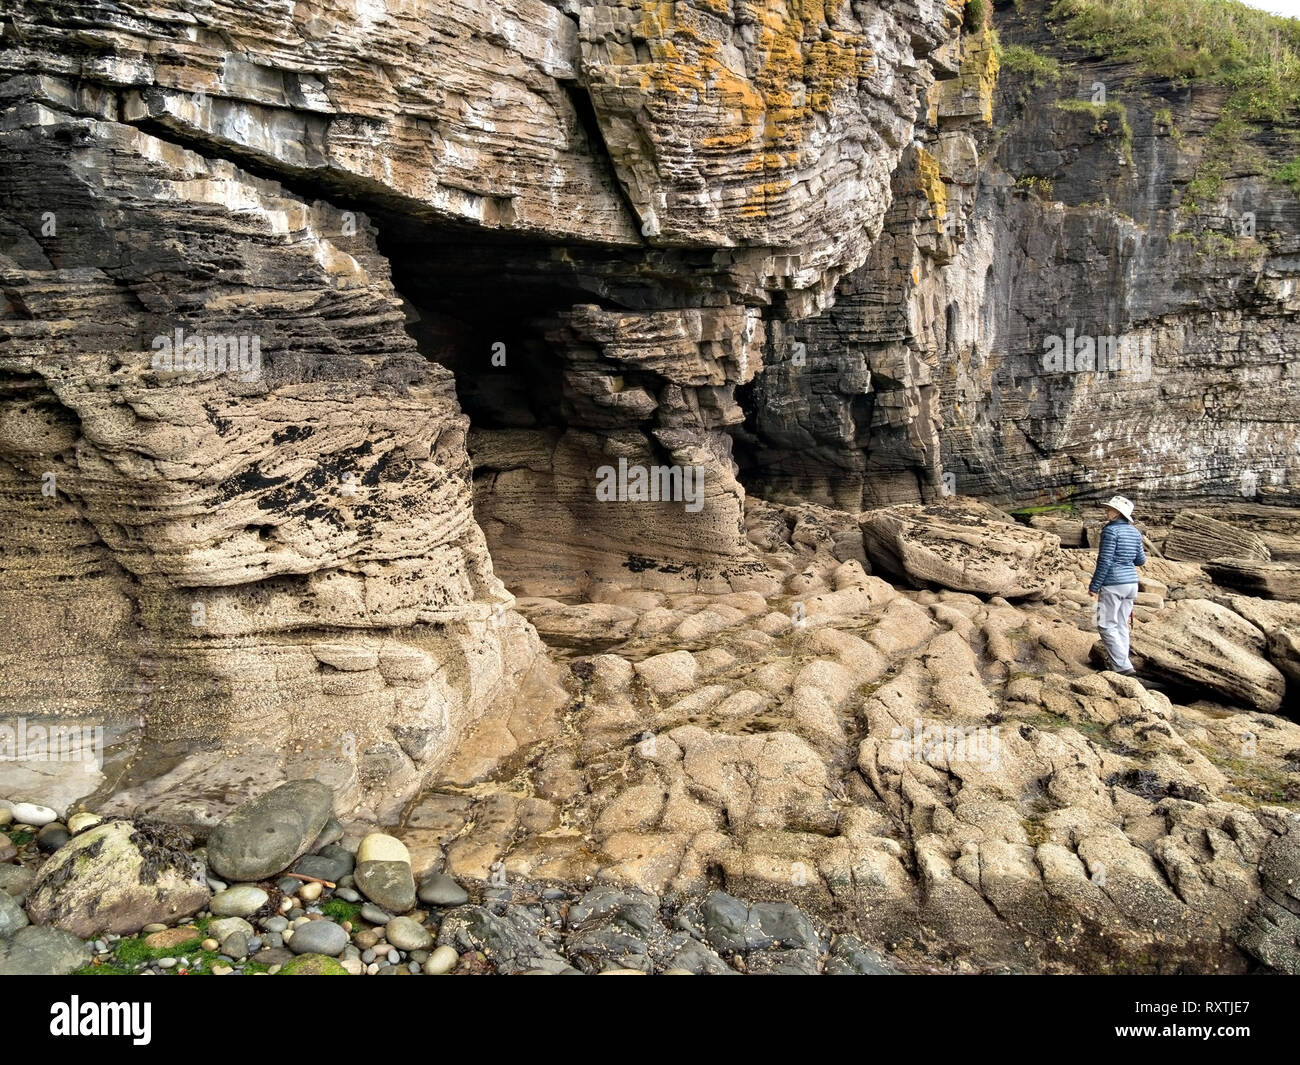 Les touristes à la recherche de roches érodées de falaises et grottes sur la mer près du rivage Elgol sur l'île écossaise de Skye, Écosse, Royaume-Uni Banque D'Images